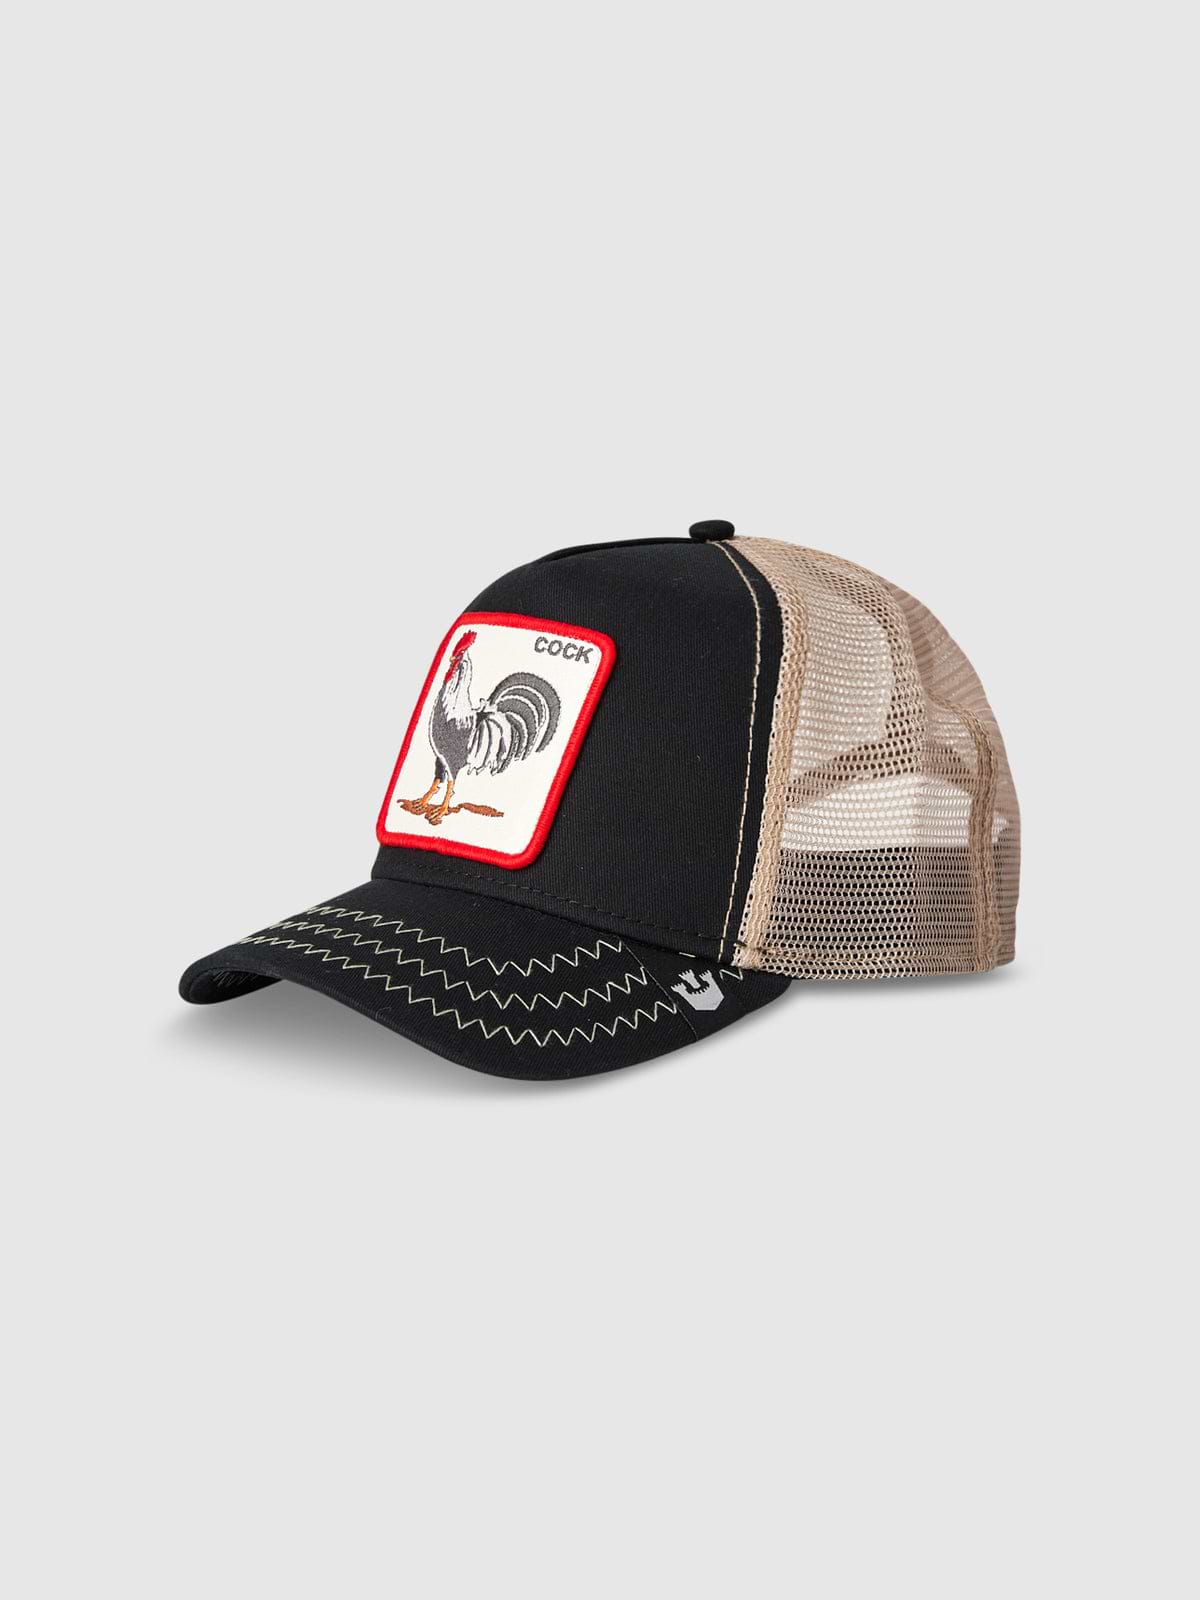 כובע מצחייה עם פאץ' COCK  / יוניסקס- Goorin|גורין